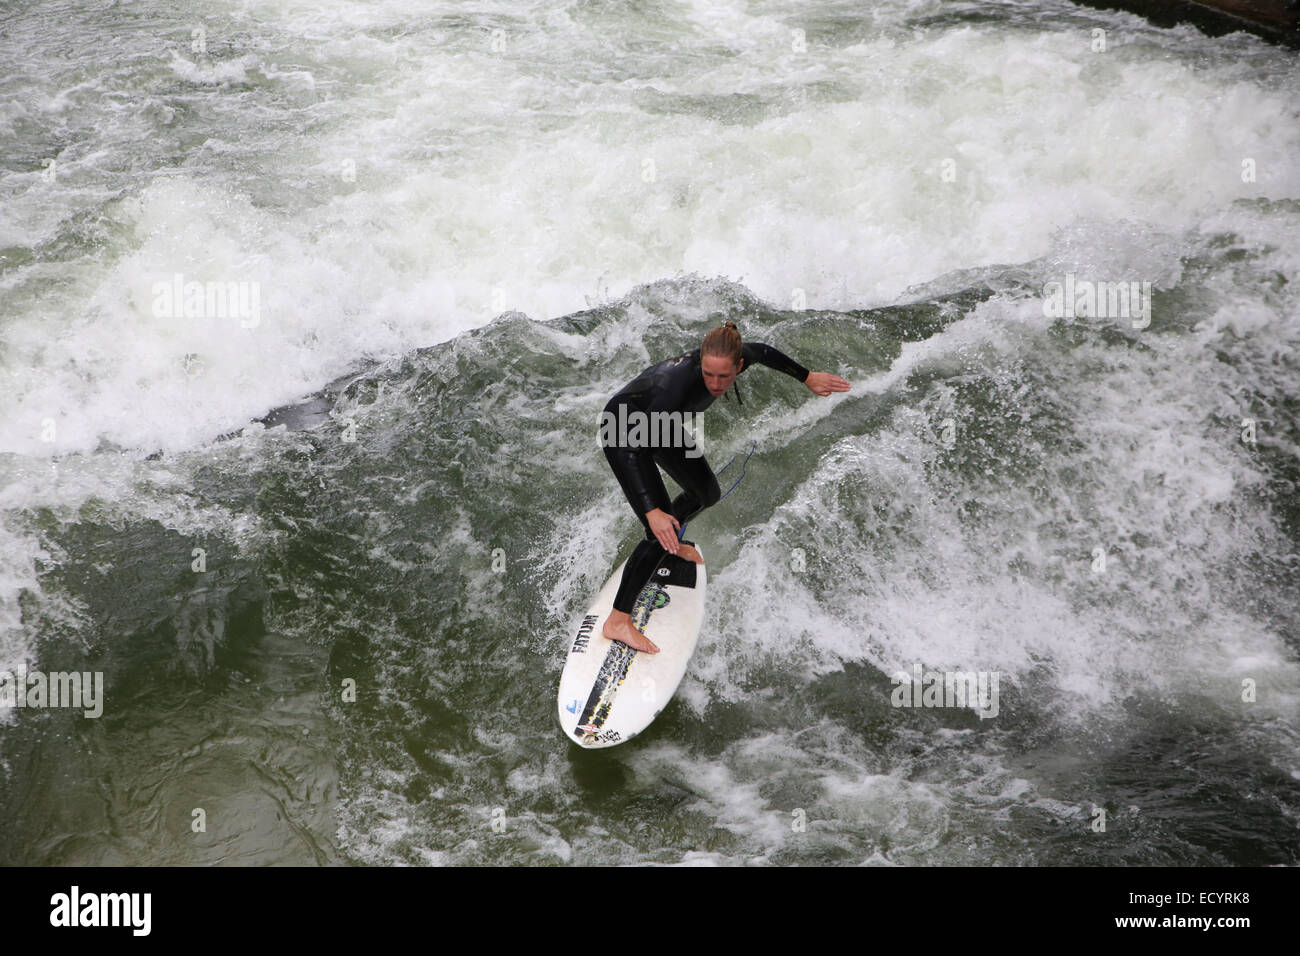 Frau Surfer Surfen künstlichen Welle Eisbach Welle München Stockfoto